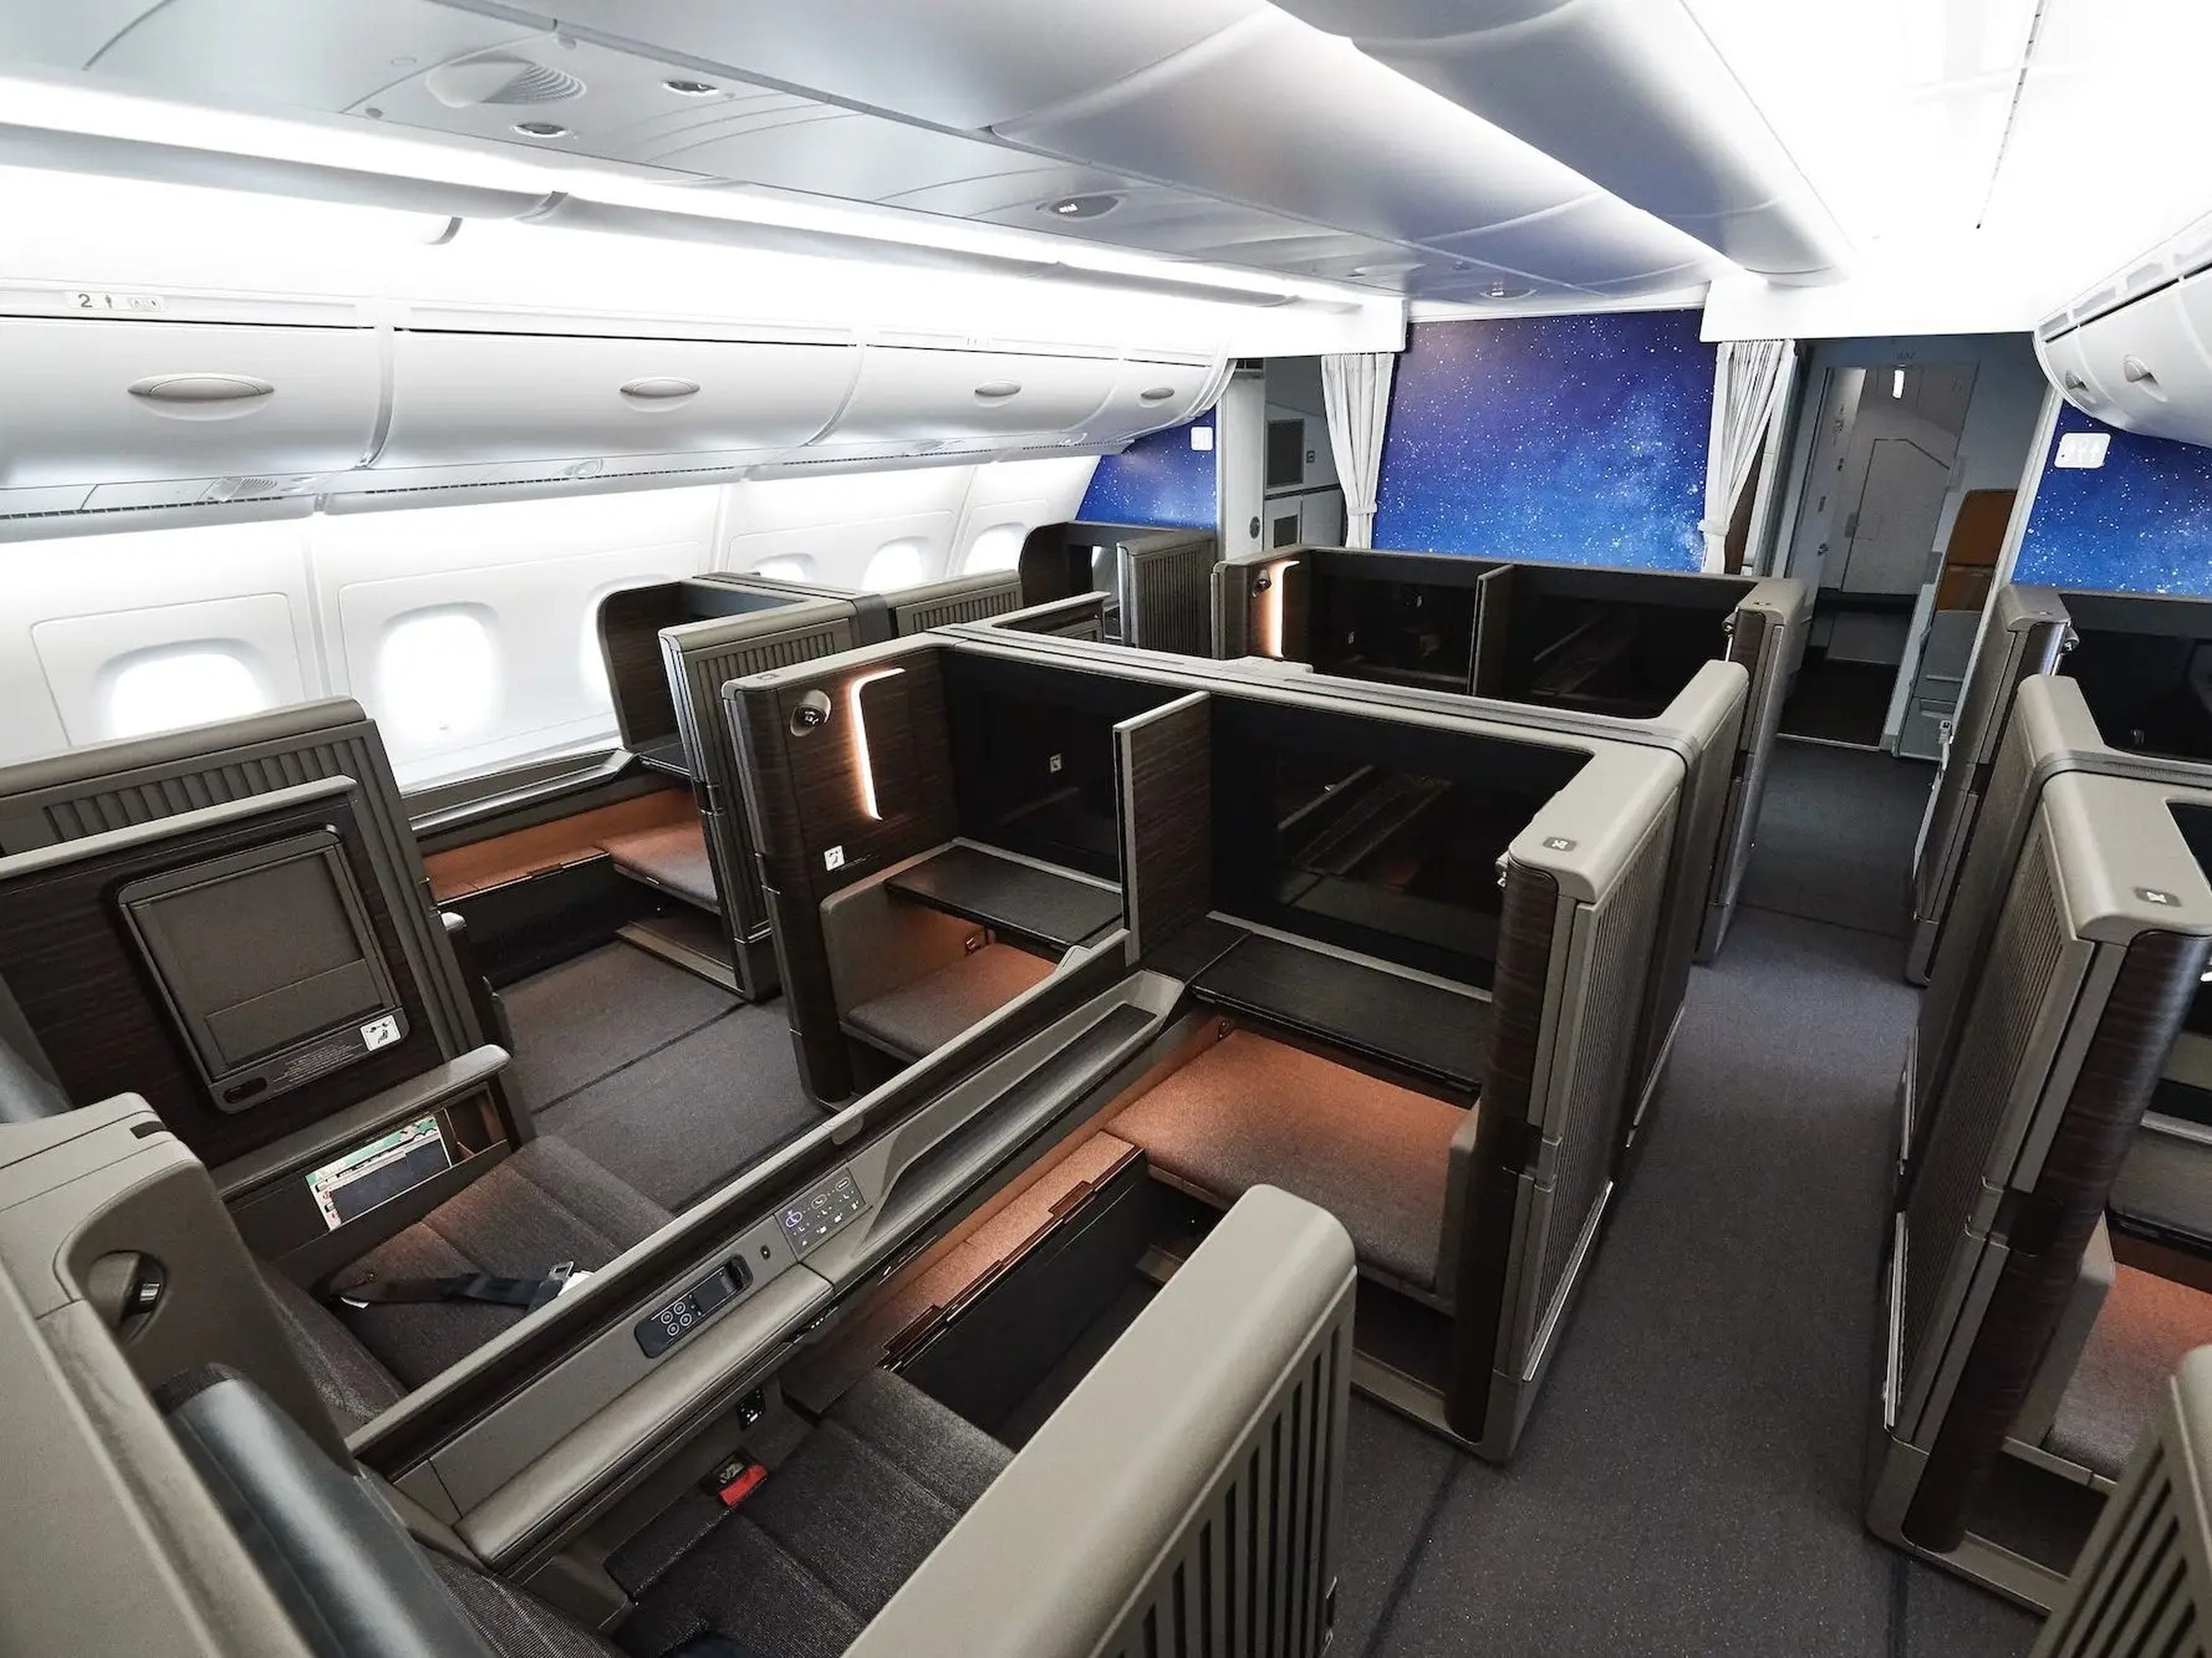 ANA A380 first class seats.